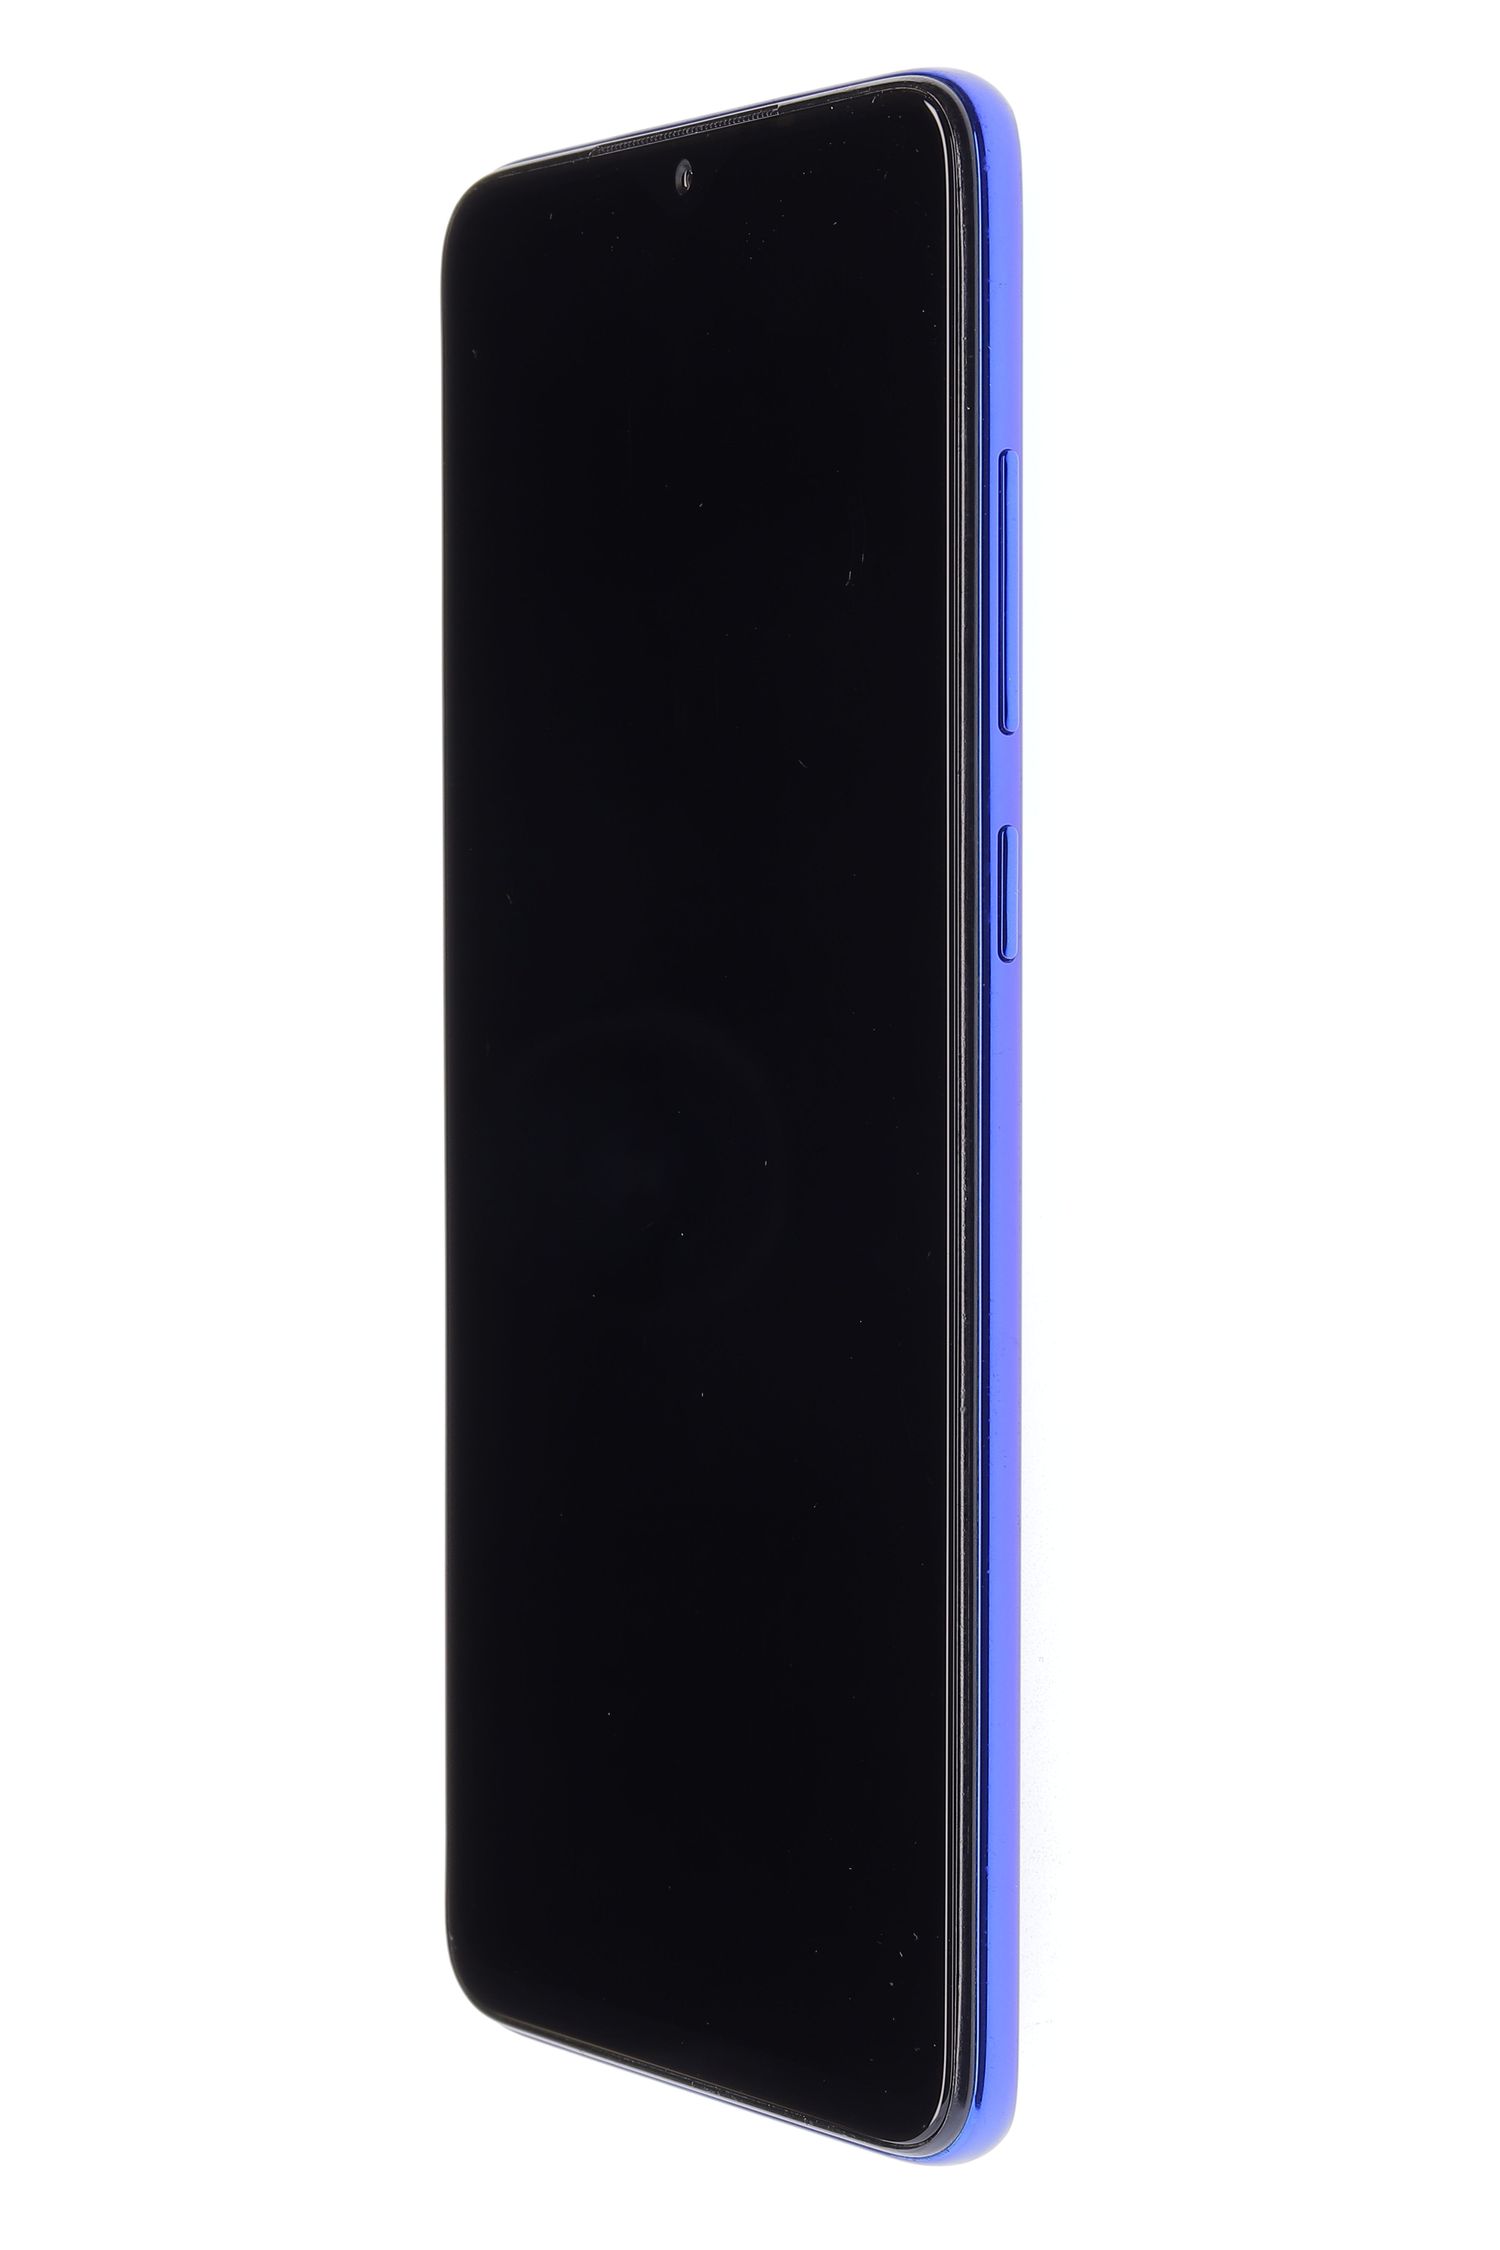 Κινητό τηλέφωνο Xiaomi Redmi Note 8 Pro, Blue, 64 GB, Foarte Bun